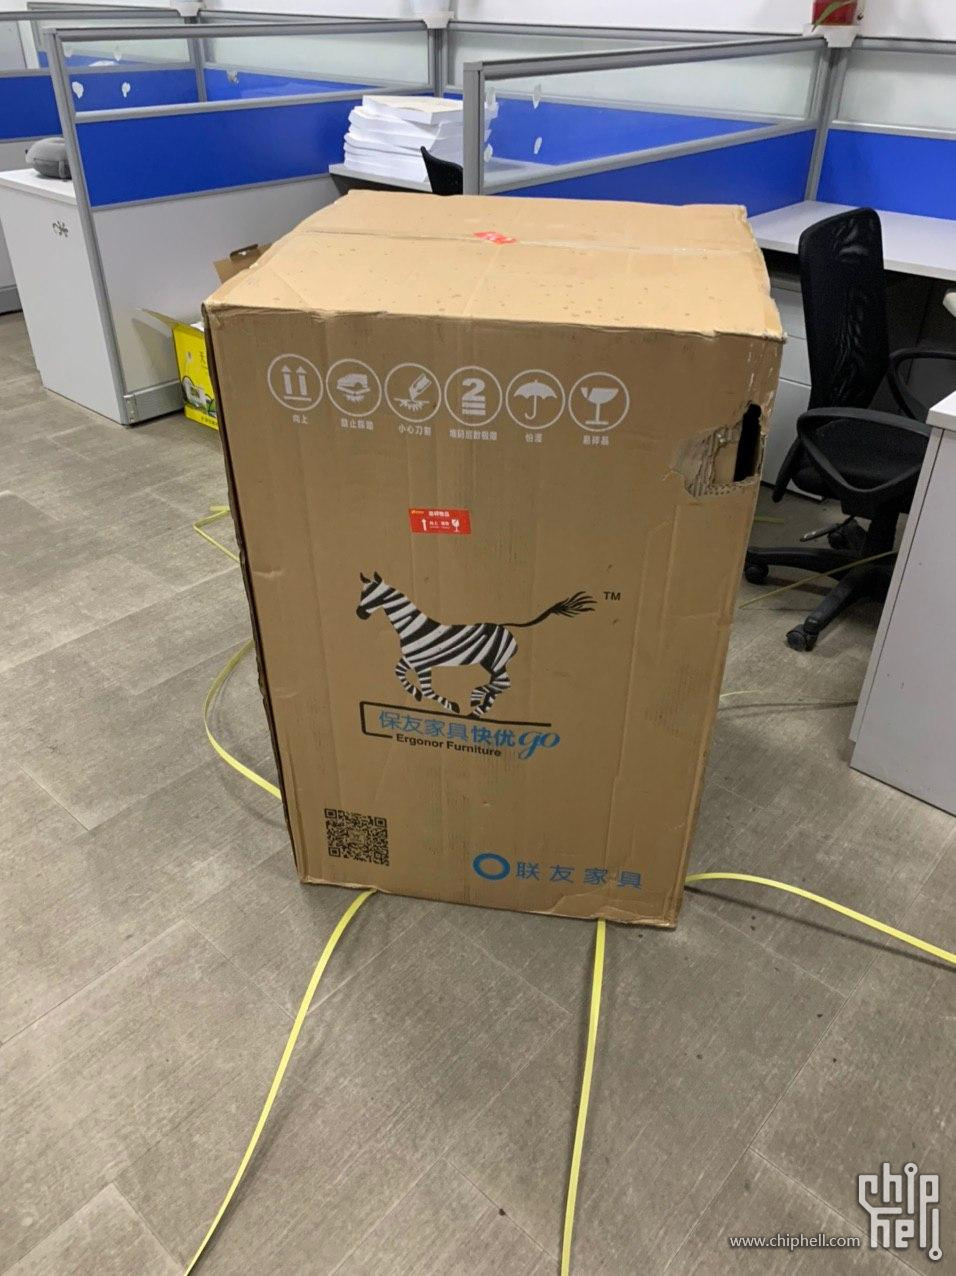 箱子是真的大，感谢德邦帮我搬进办公室